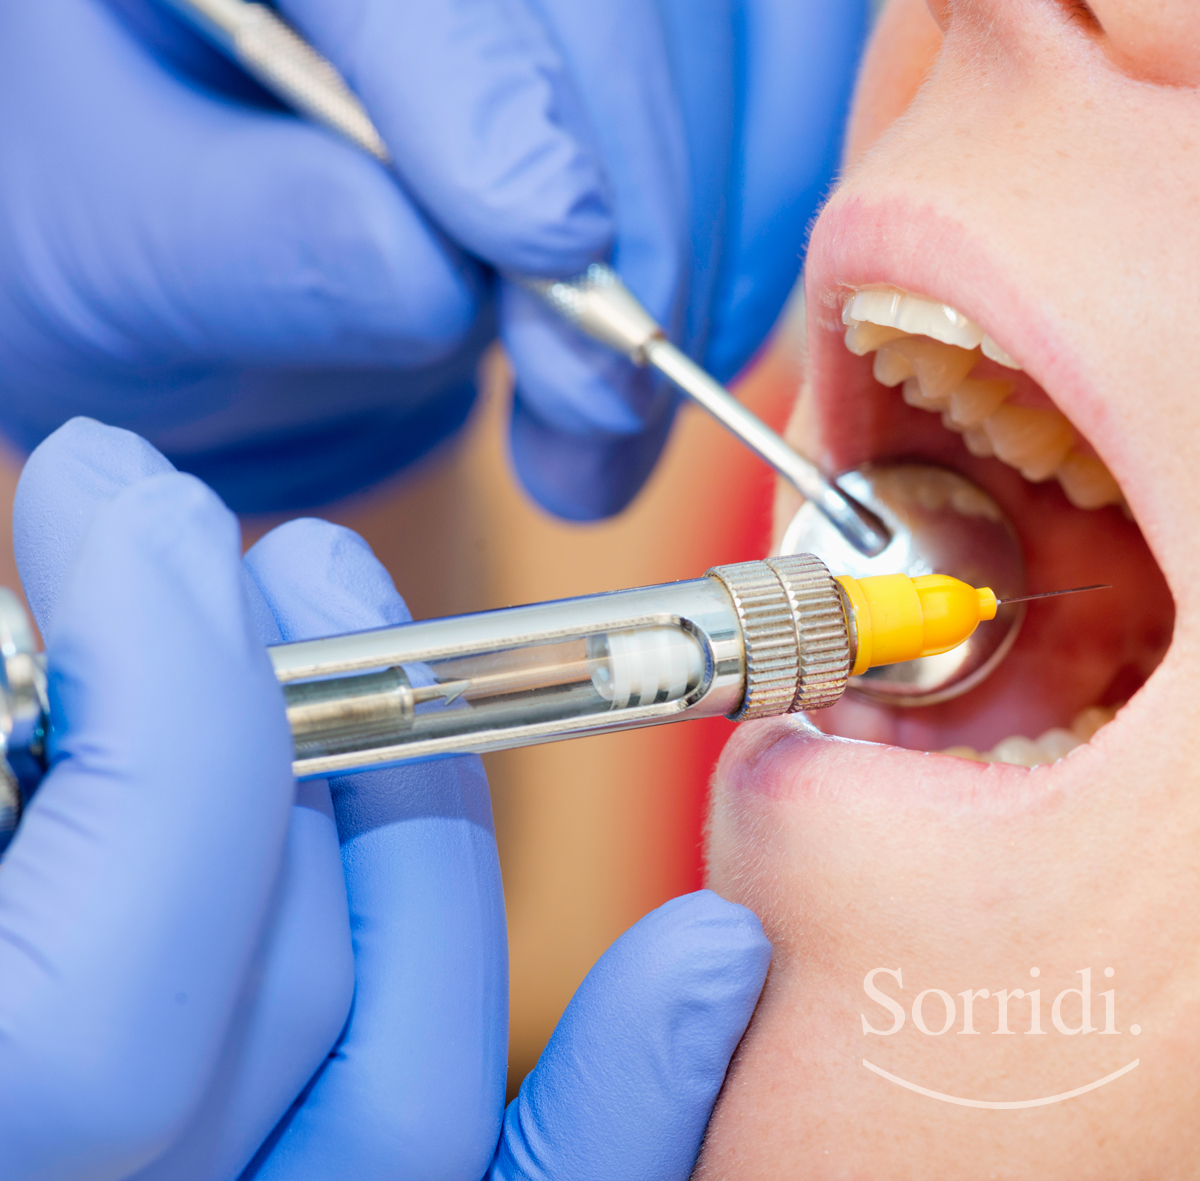 sorridi-ch-magazine-dentista-locarno-anestesia